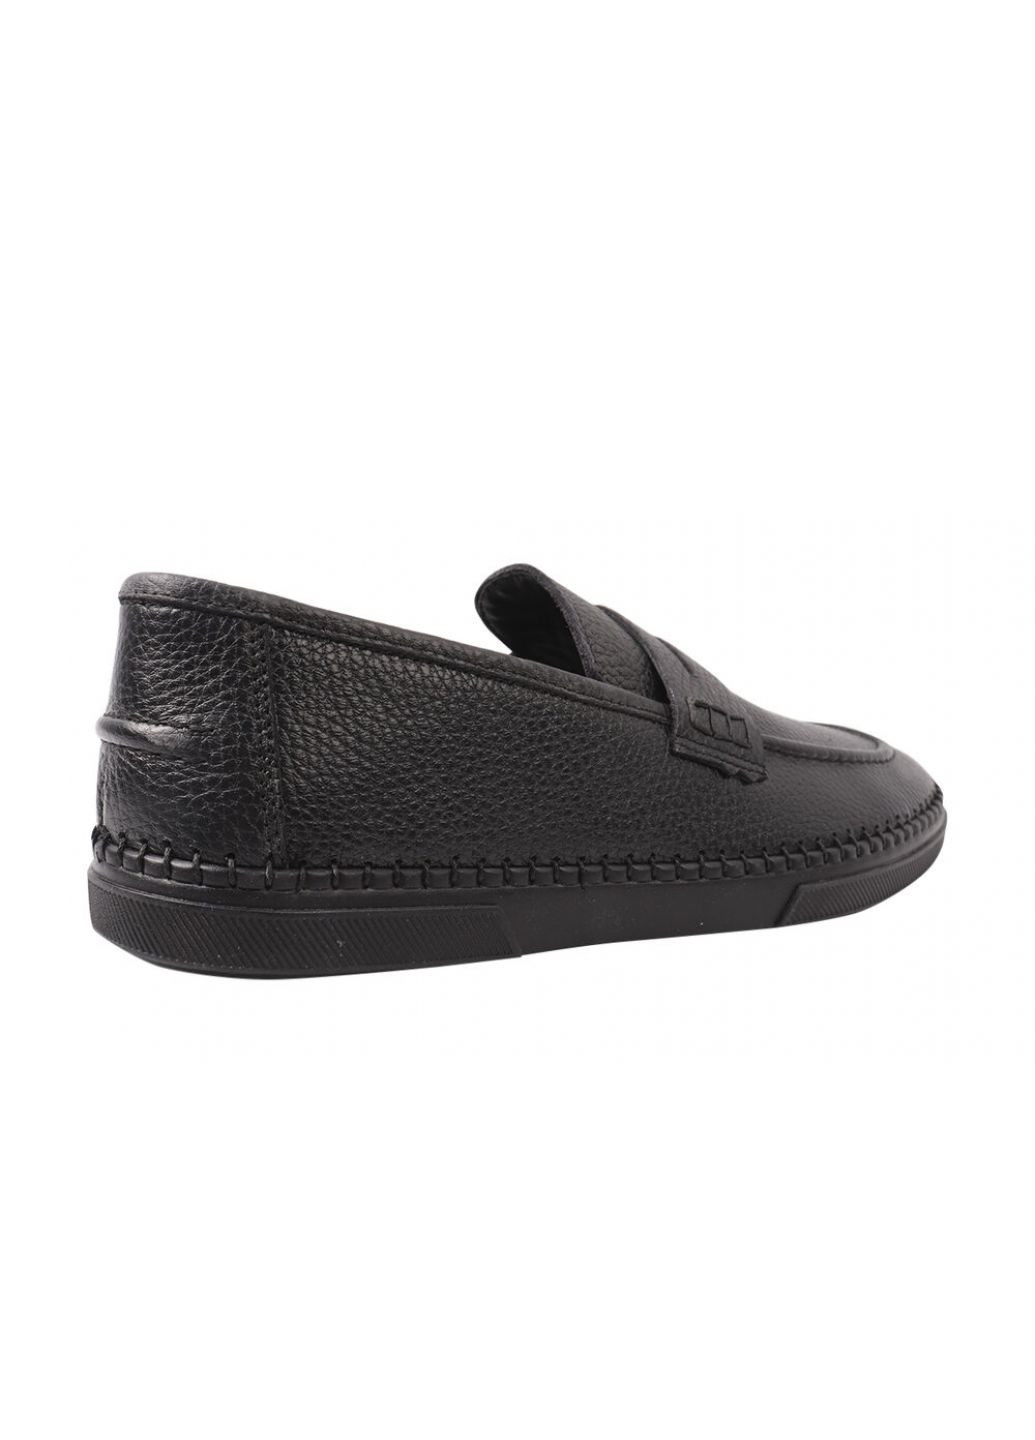 Черные туфли лоферы мужские из натуральной кожи, на низком ходу, цвет черный, турция Ridge